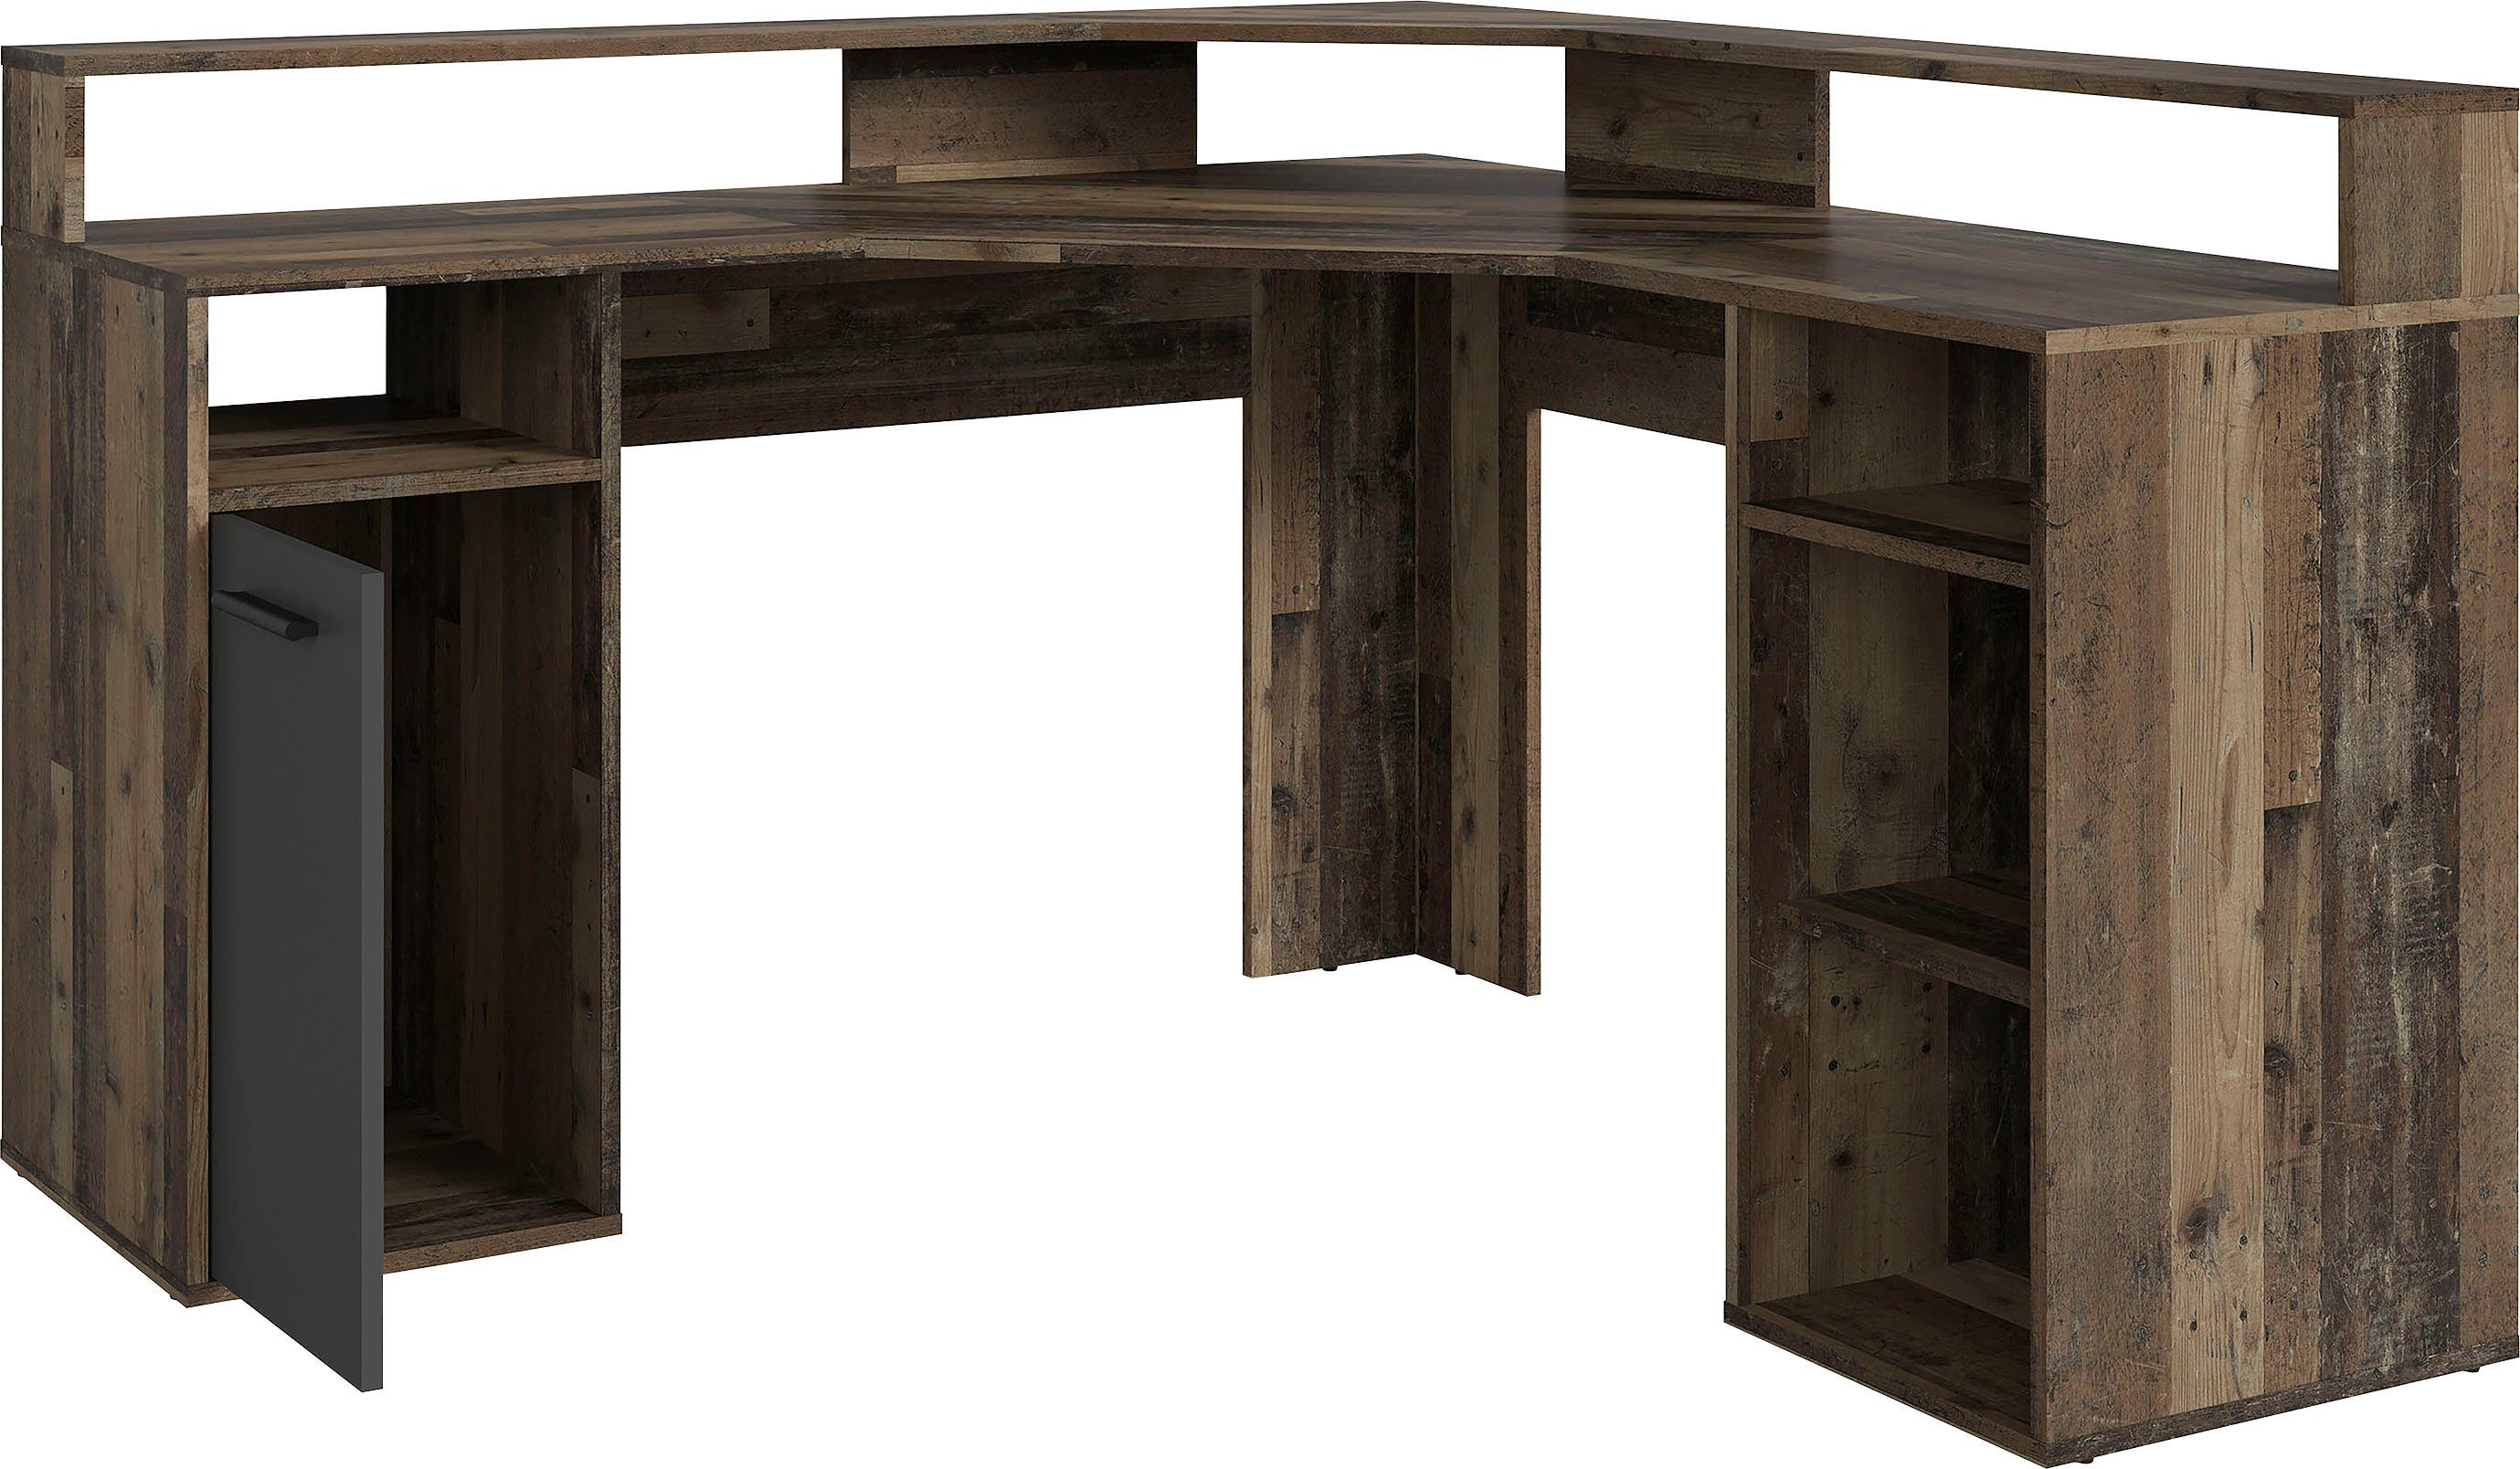 Anthrazit | Wood Wood Gamingtisch Old | cm, byLIVING Eckschreibtisch / moderner Breite Wood Fox, Old Old 139